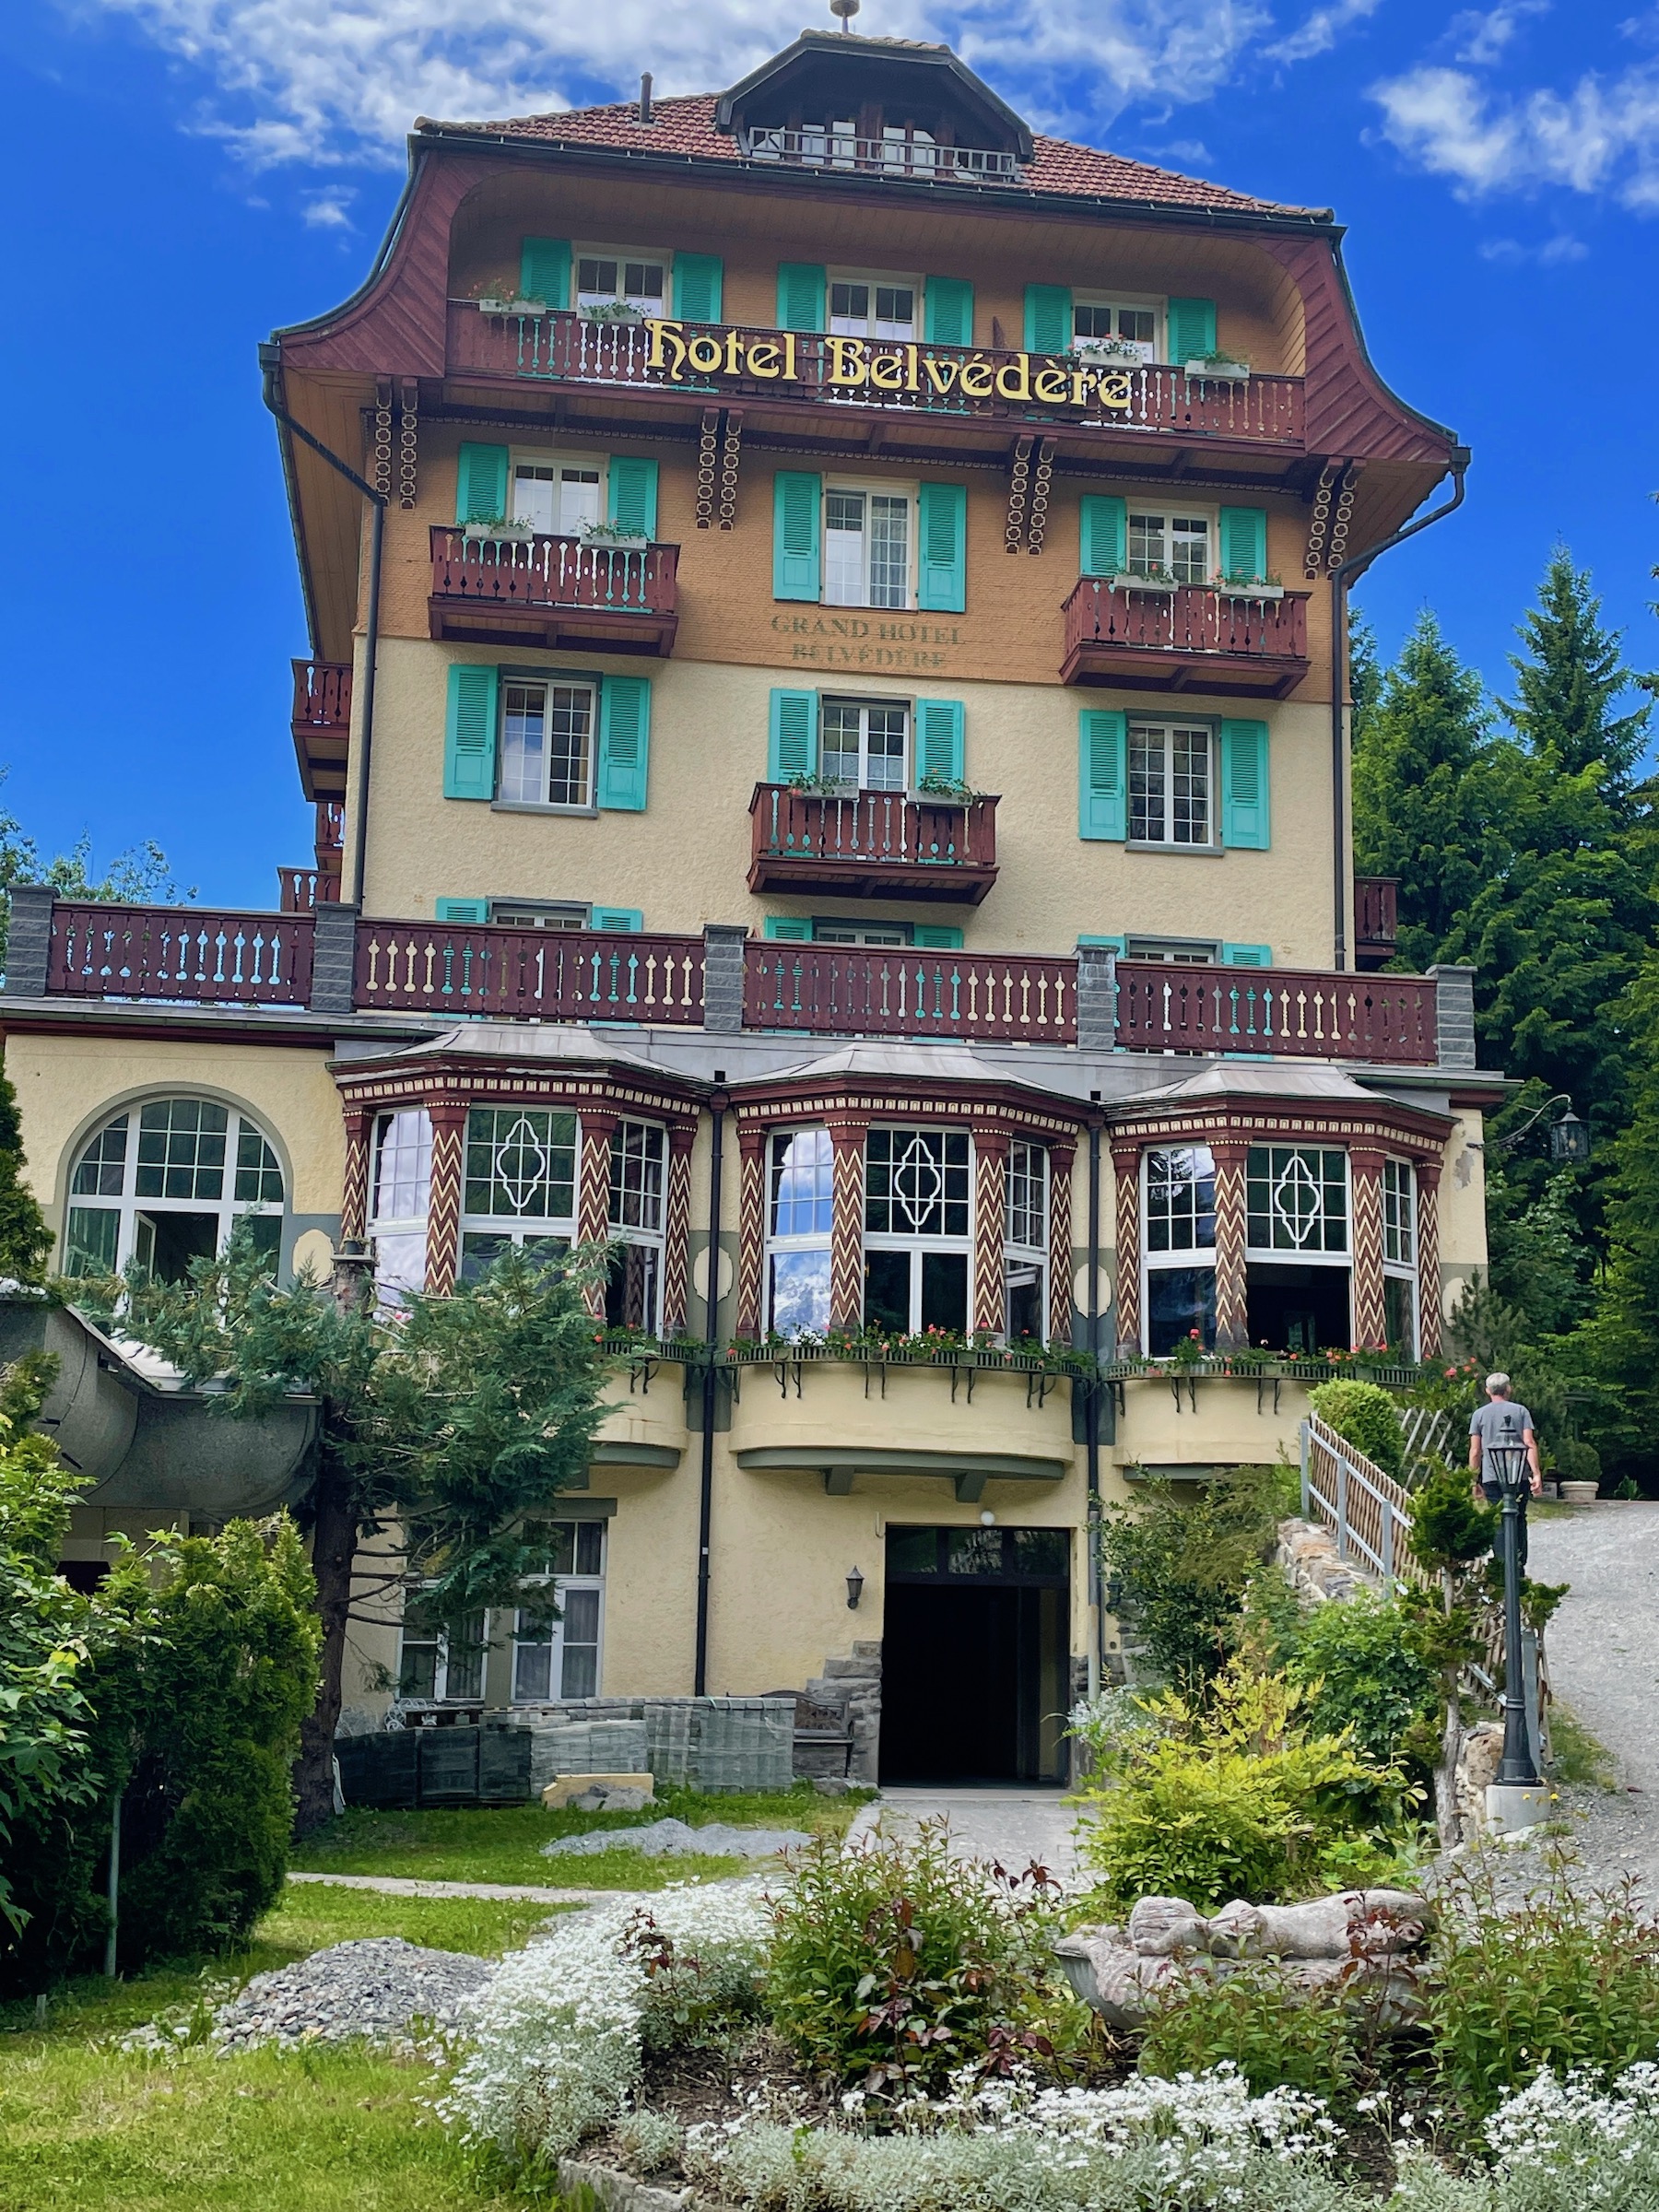 Hotel Belvedere, Wengen